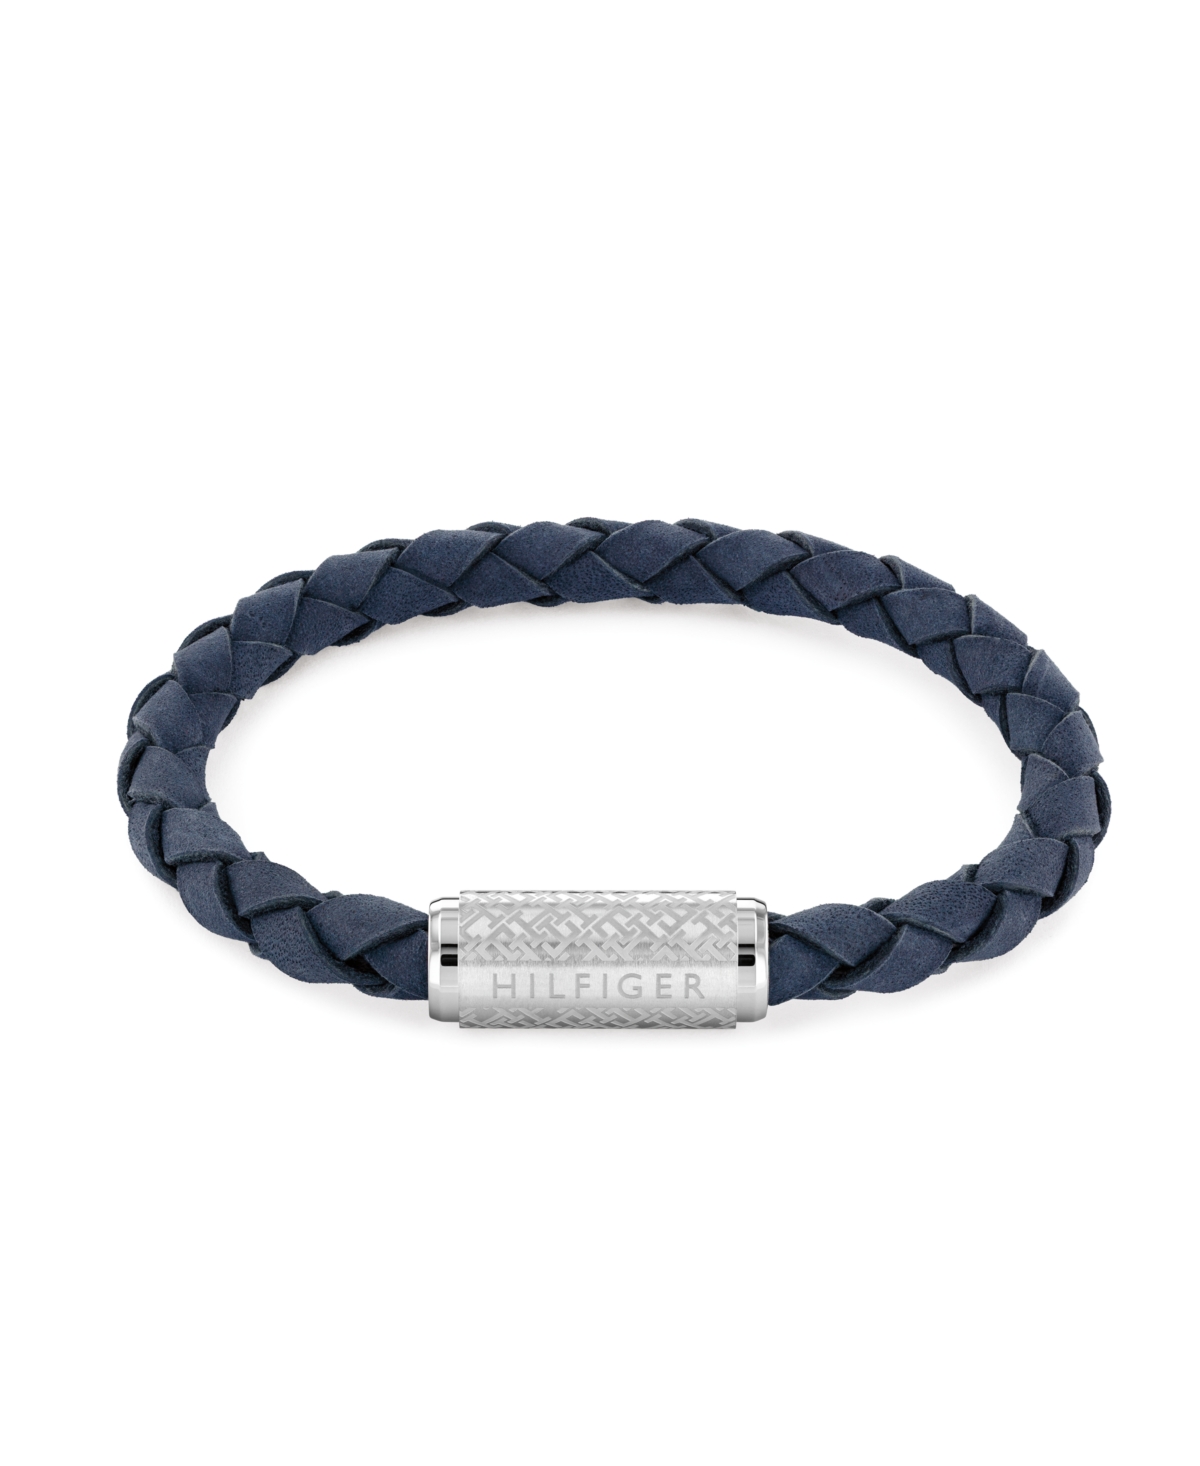 Tommy Hilfiger Men's Braided Blue Suede Leather Bracelet